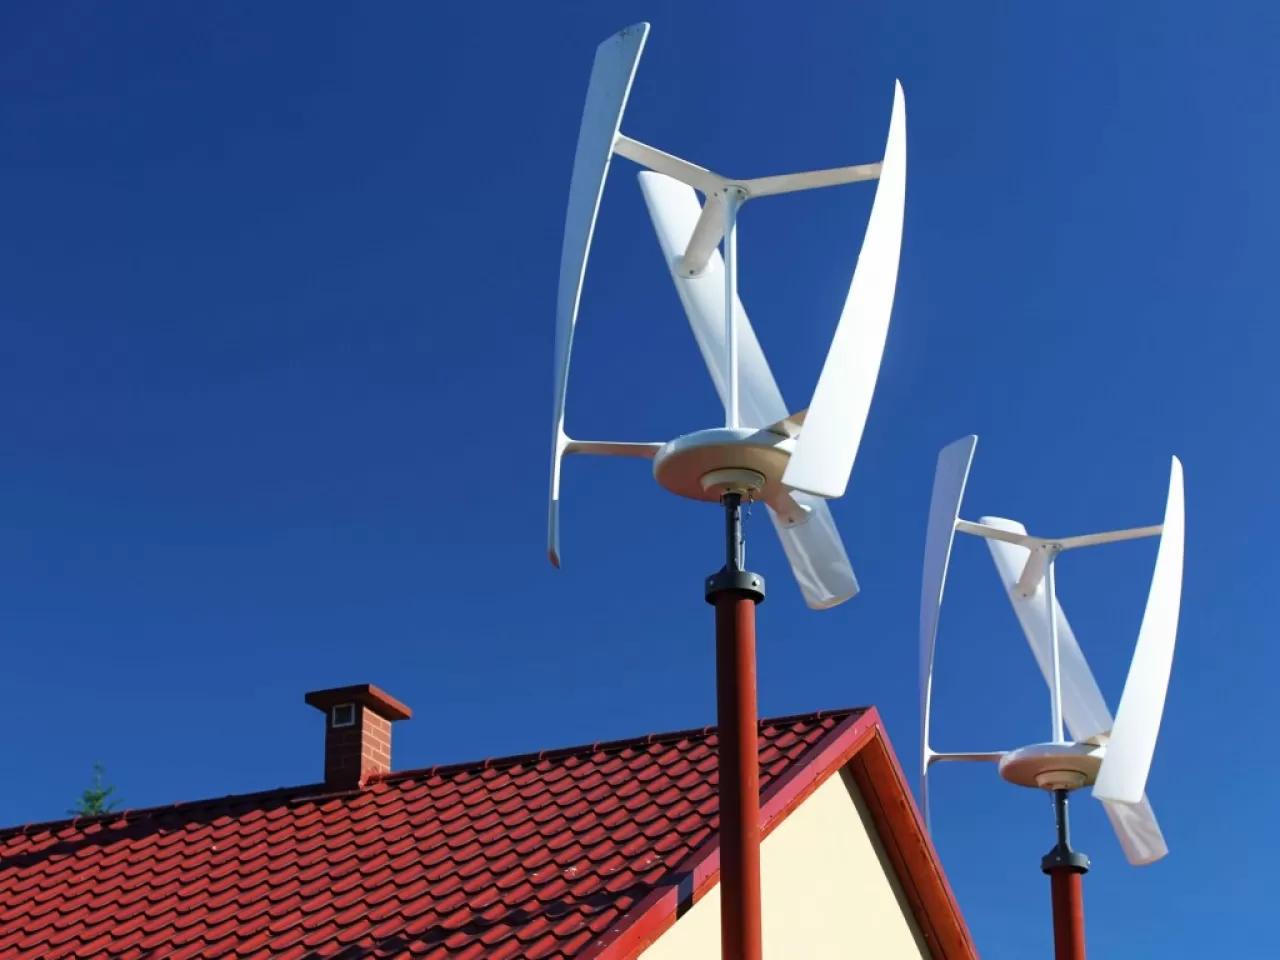 Evde Rüzgâr Enerjisi İle Elektrik Üretimi Nasıl Yapılır?